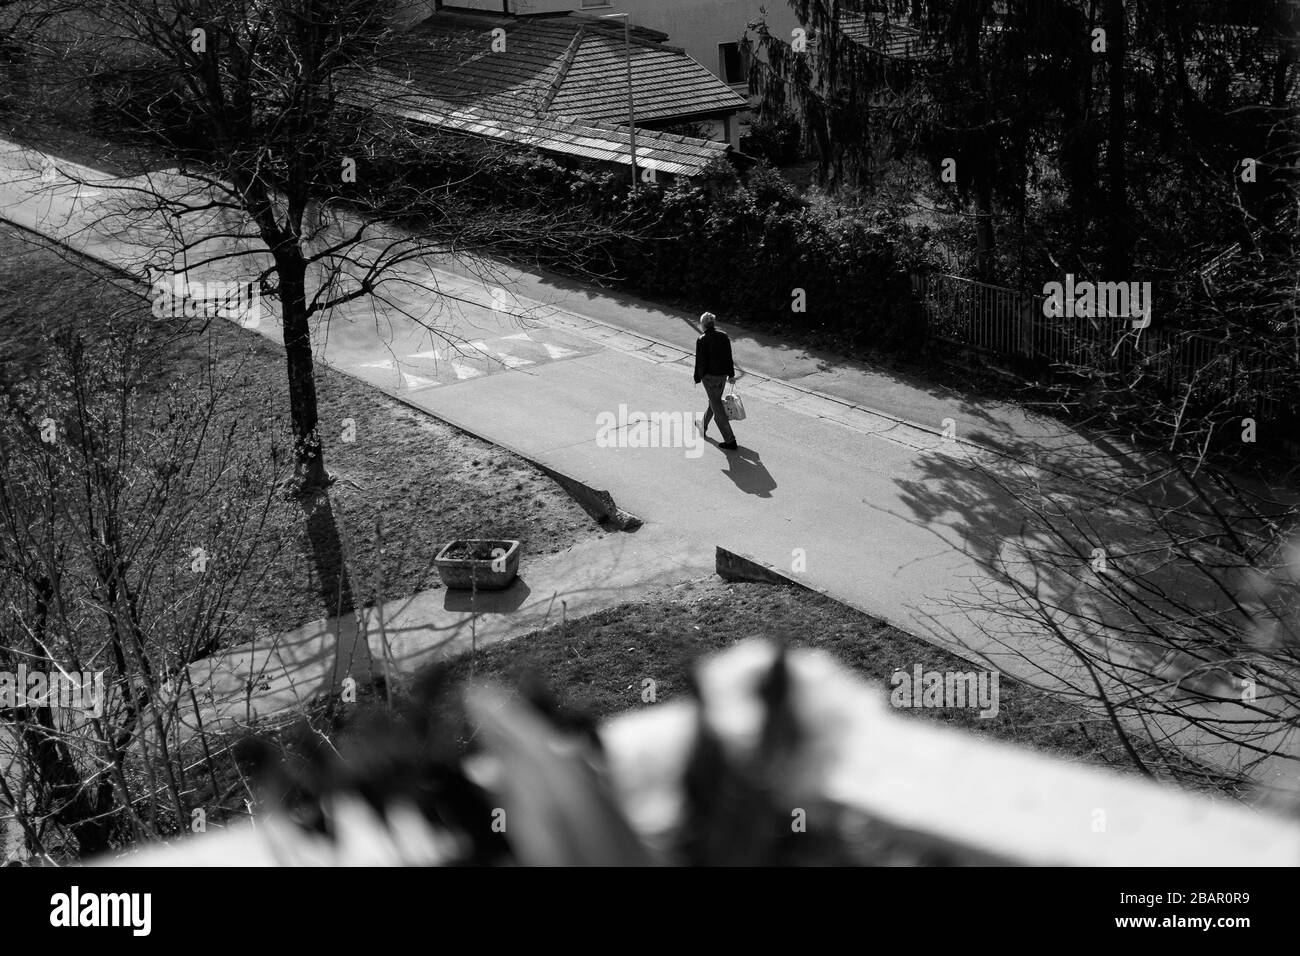 Kranj, Slowenien, 21. März 2020: Ein Mann, der vom Lebensmittelgeschäft zurückkehrt, läuft während des Coronavirus-Ausbruchs landesweit eine leere Straße hinunter. Stockfoto